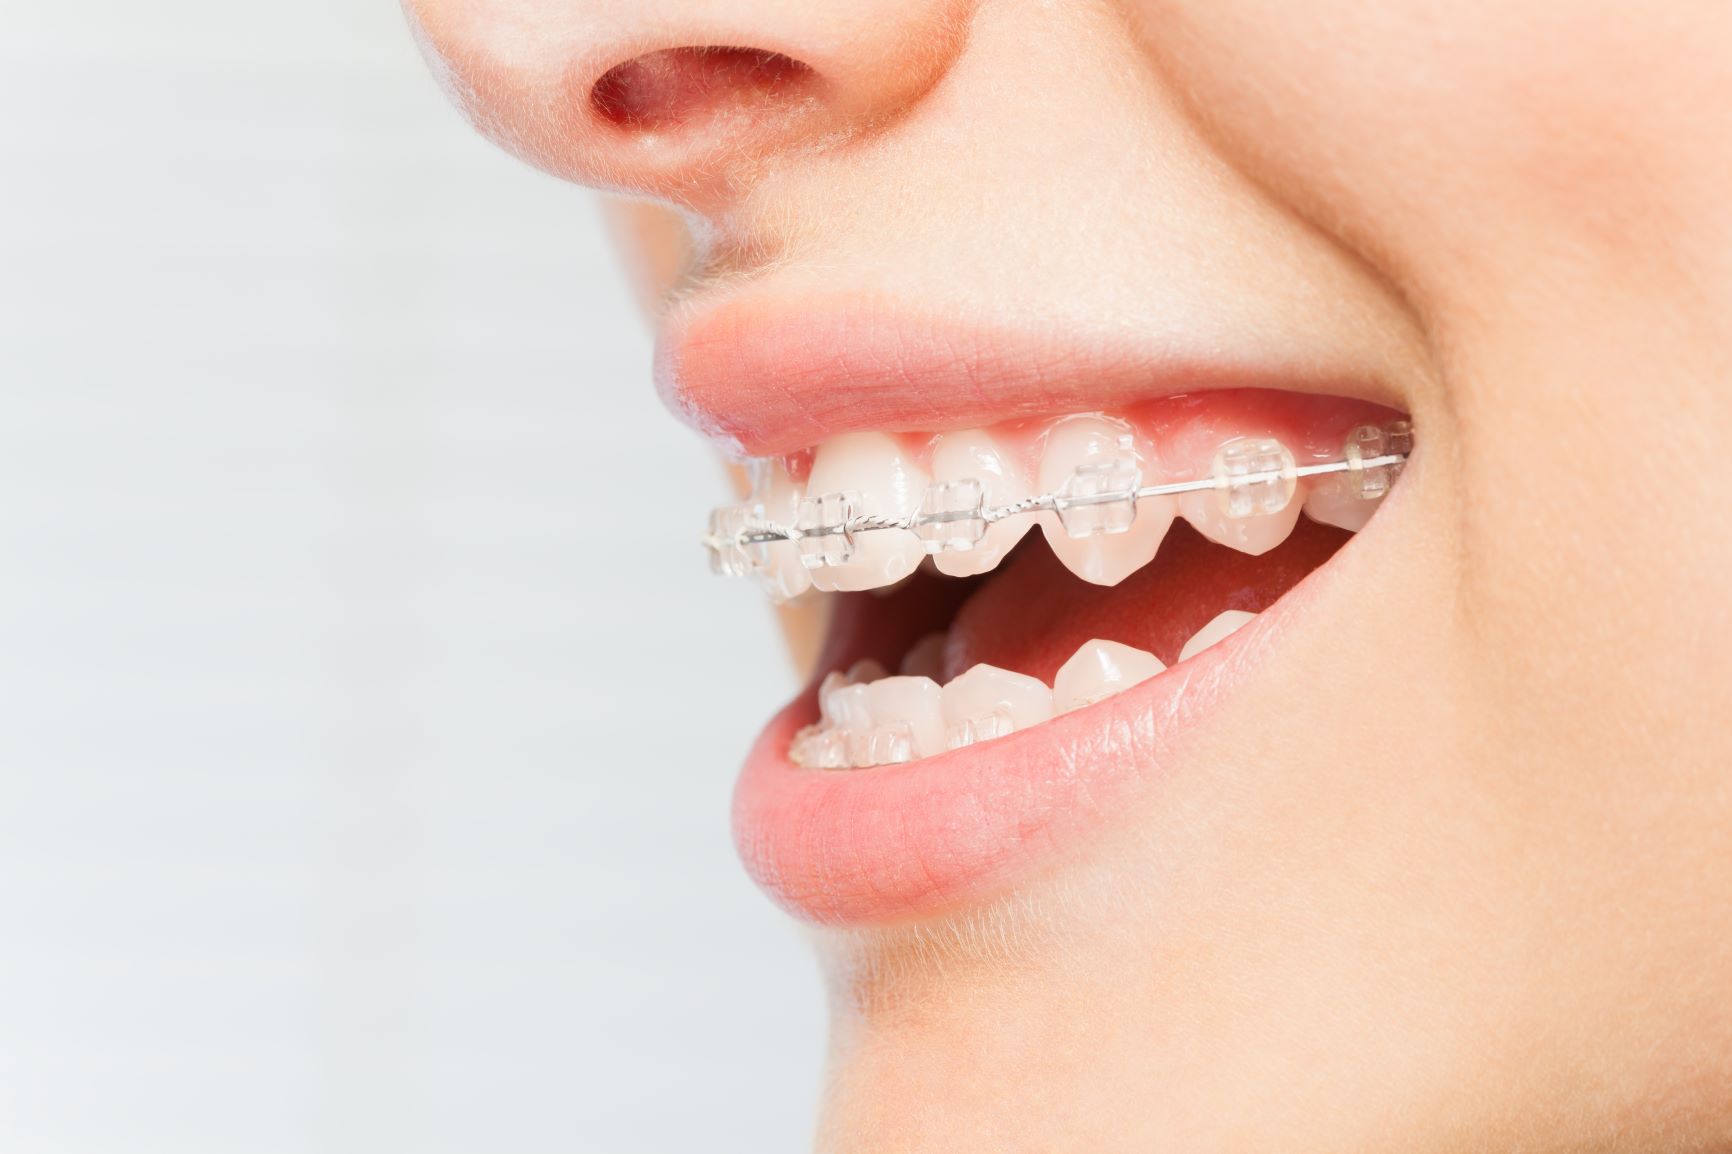 The Smile Space Orthodontie - L’appareil dentaire avec plaquettes transparentes